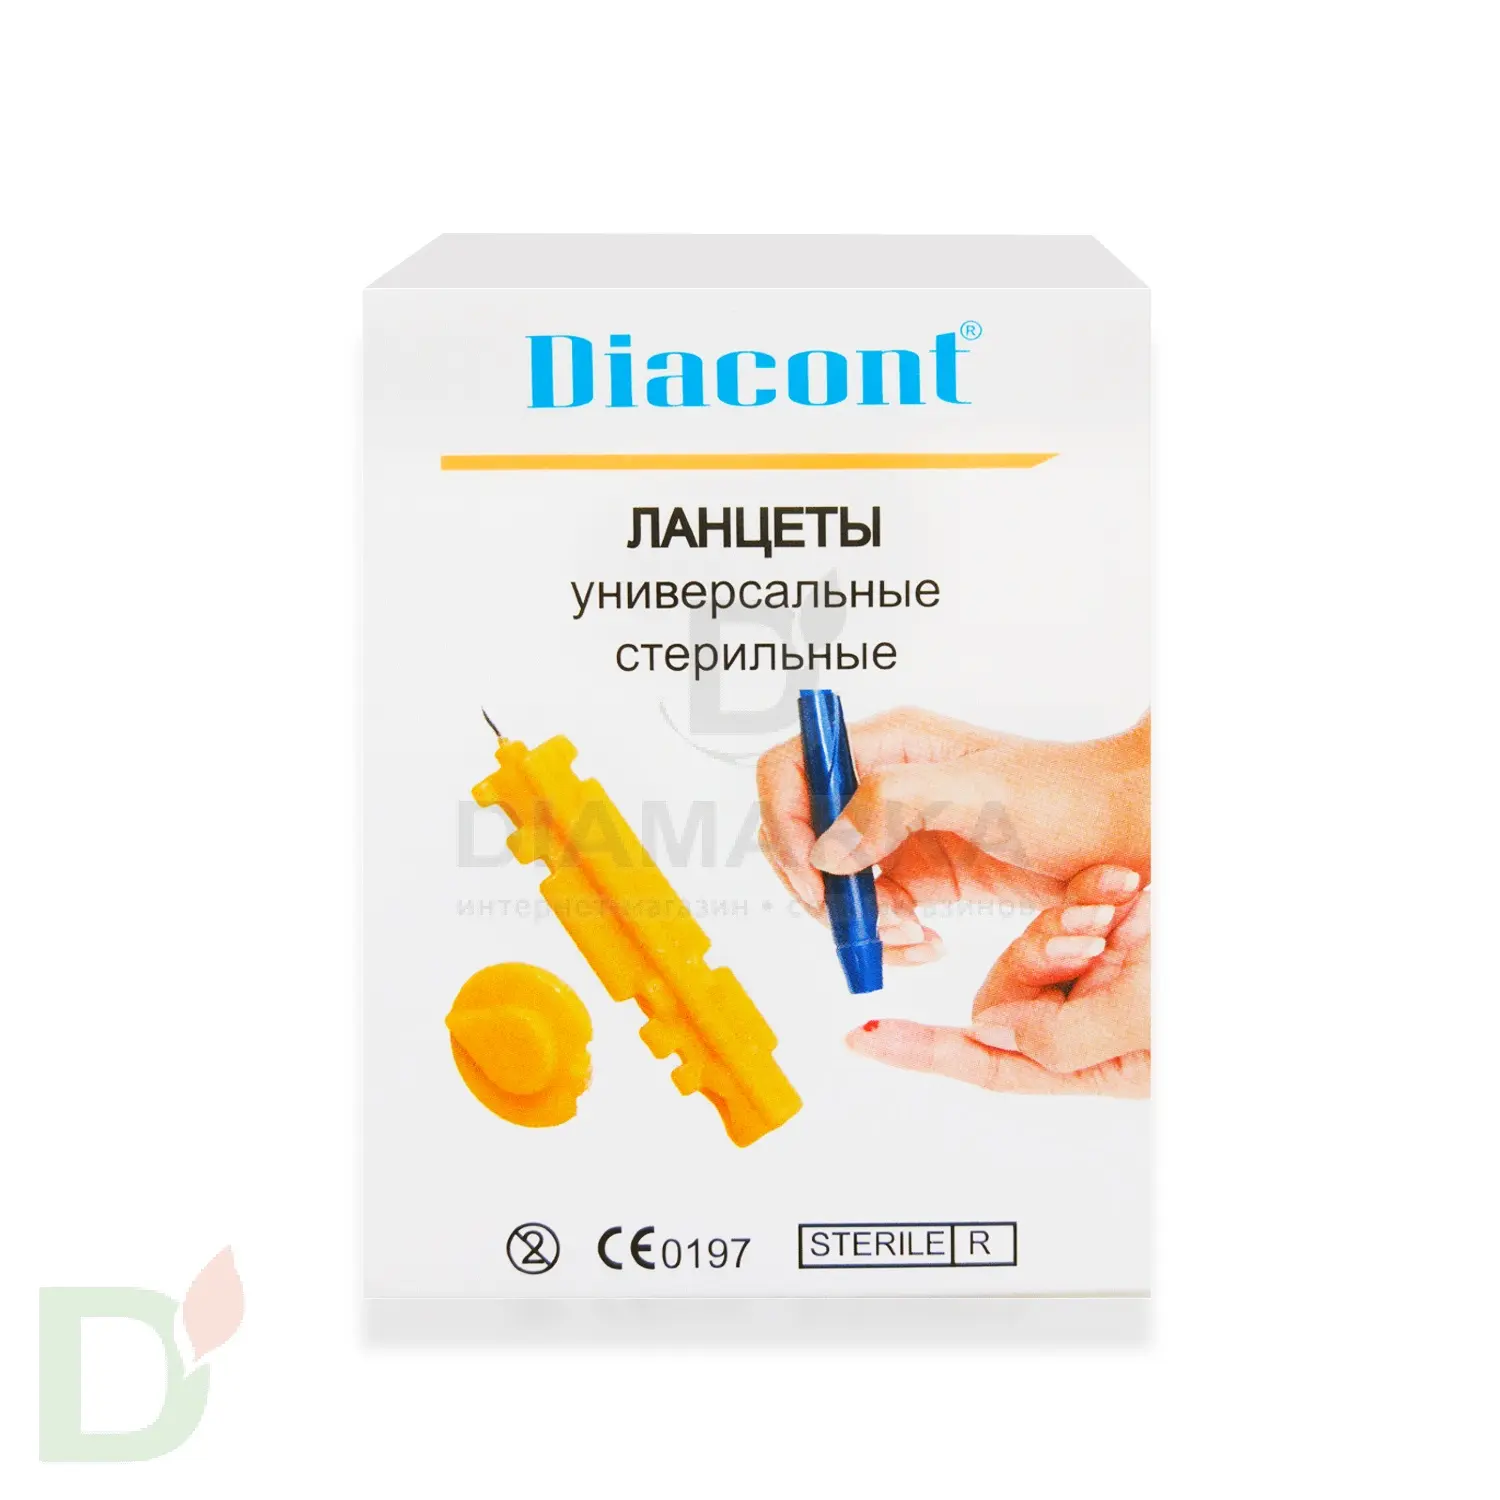 Ланцеты Диаконт (Diacont) универсальные № 50 (30G)